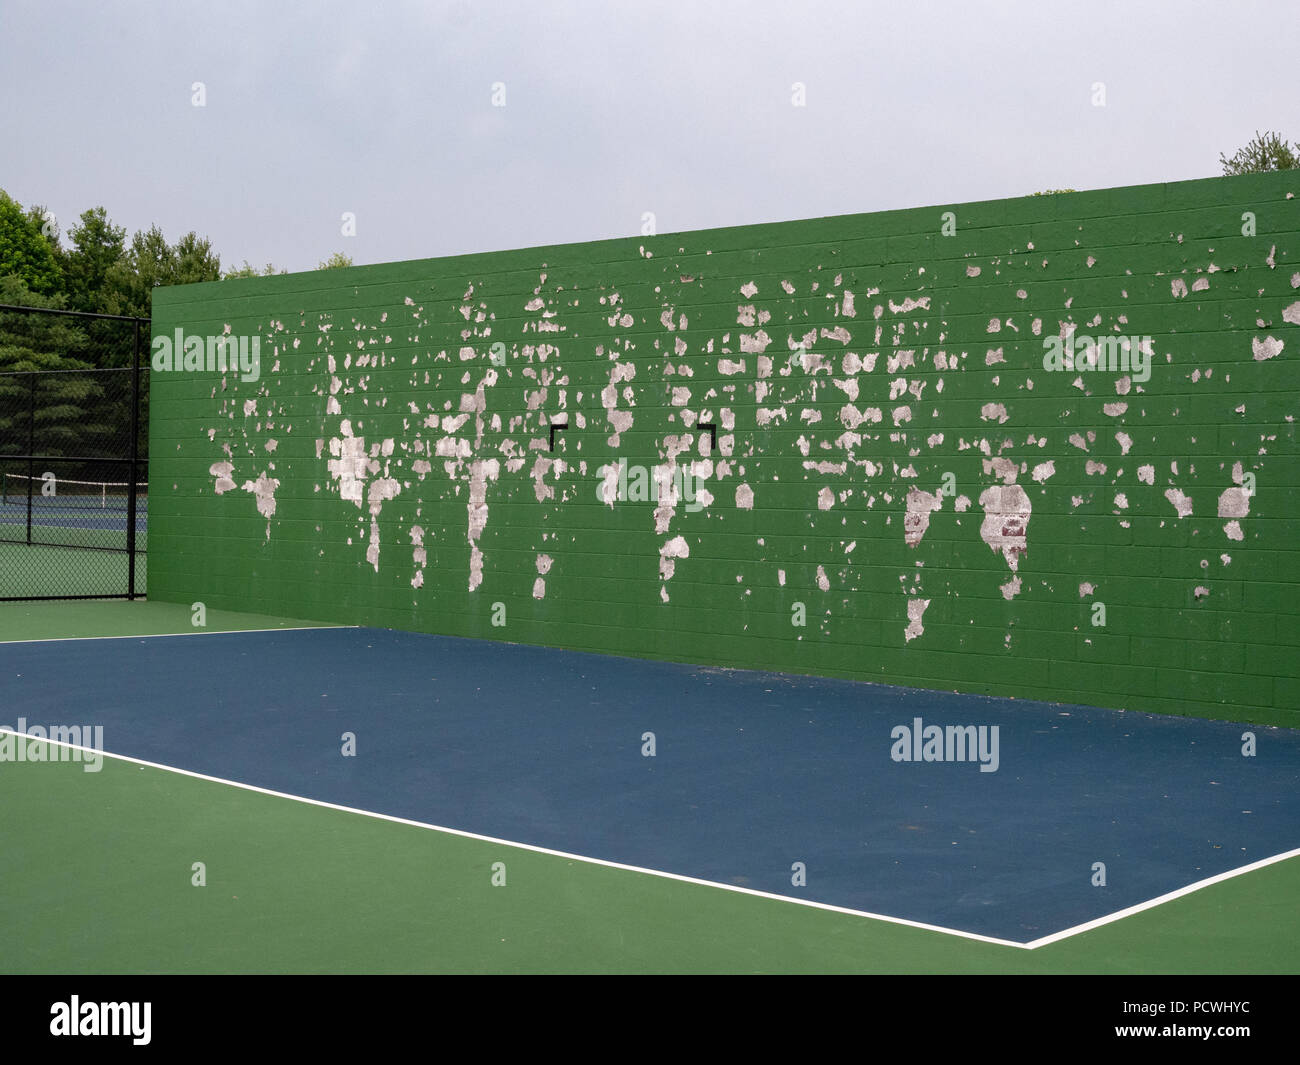 Le tennis, la crosse, la pratique sports de balle mur à un tribunal local avec décollement de peinture verte Banque D'Images